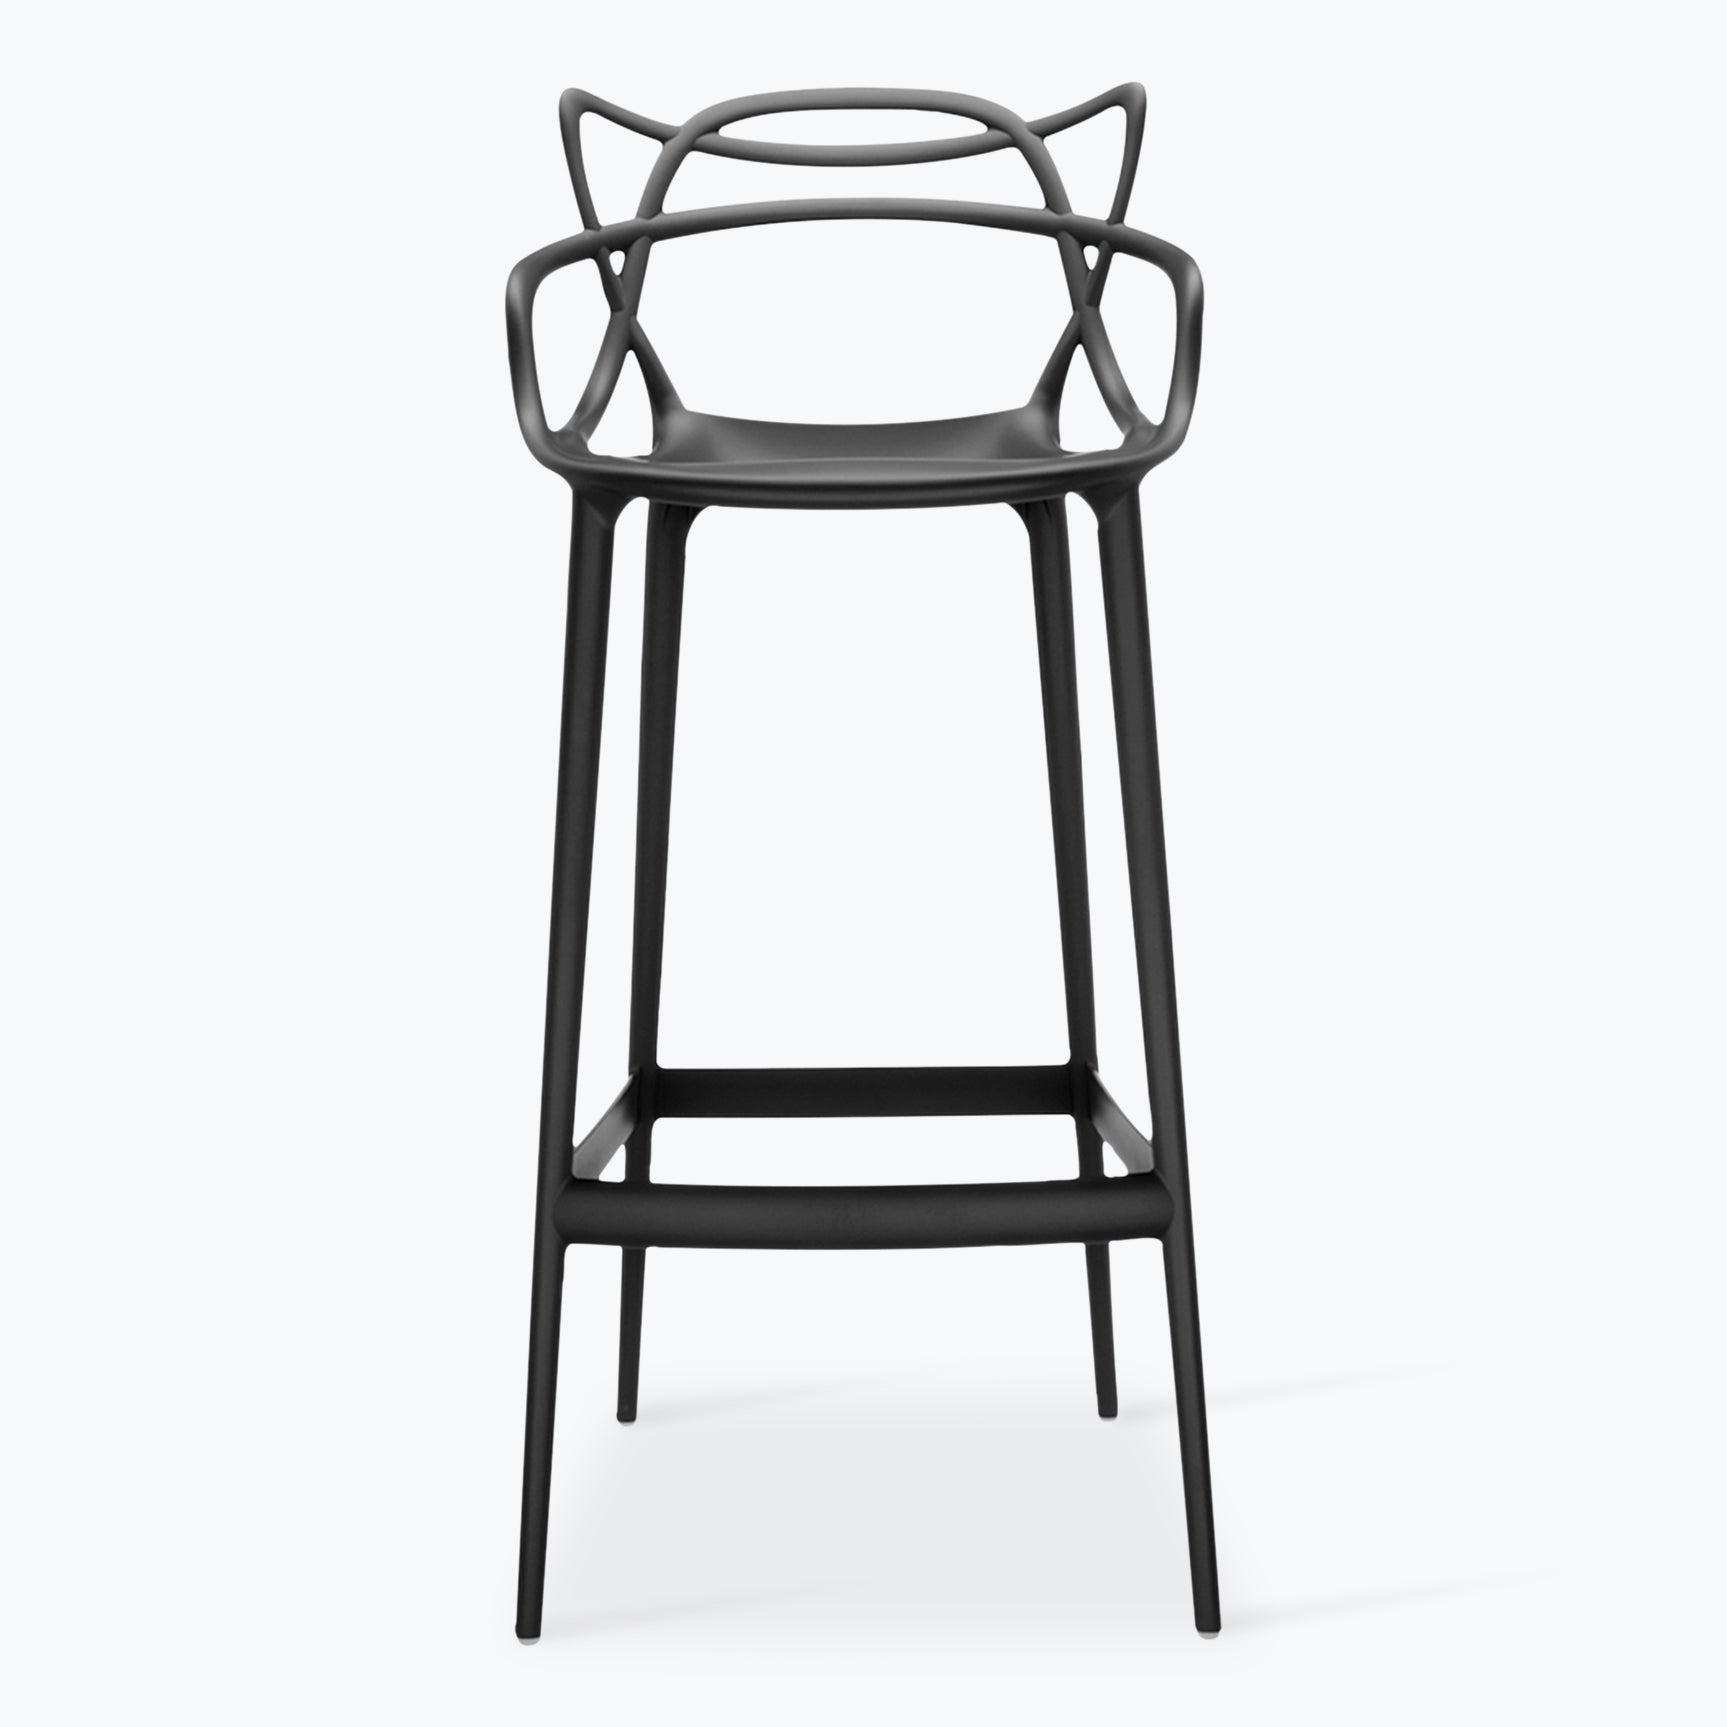 Masters stool H75cm - Carré Lumière